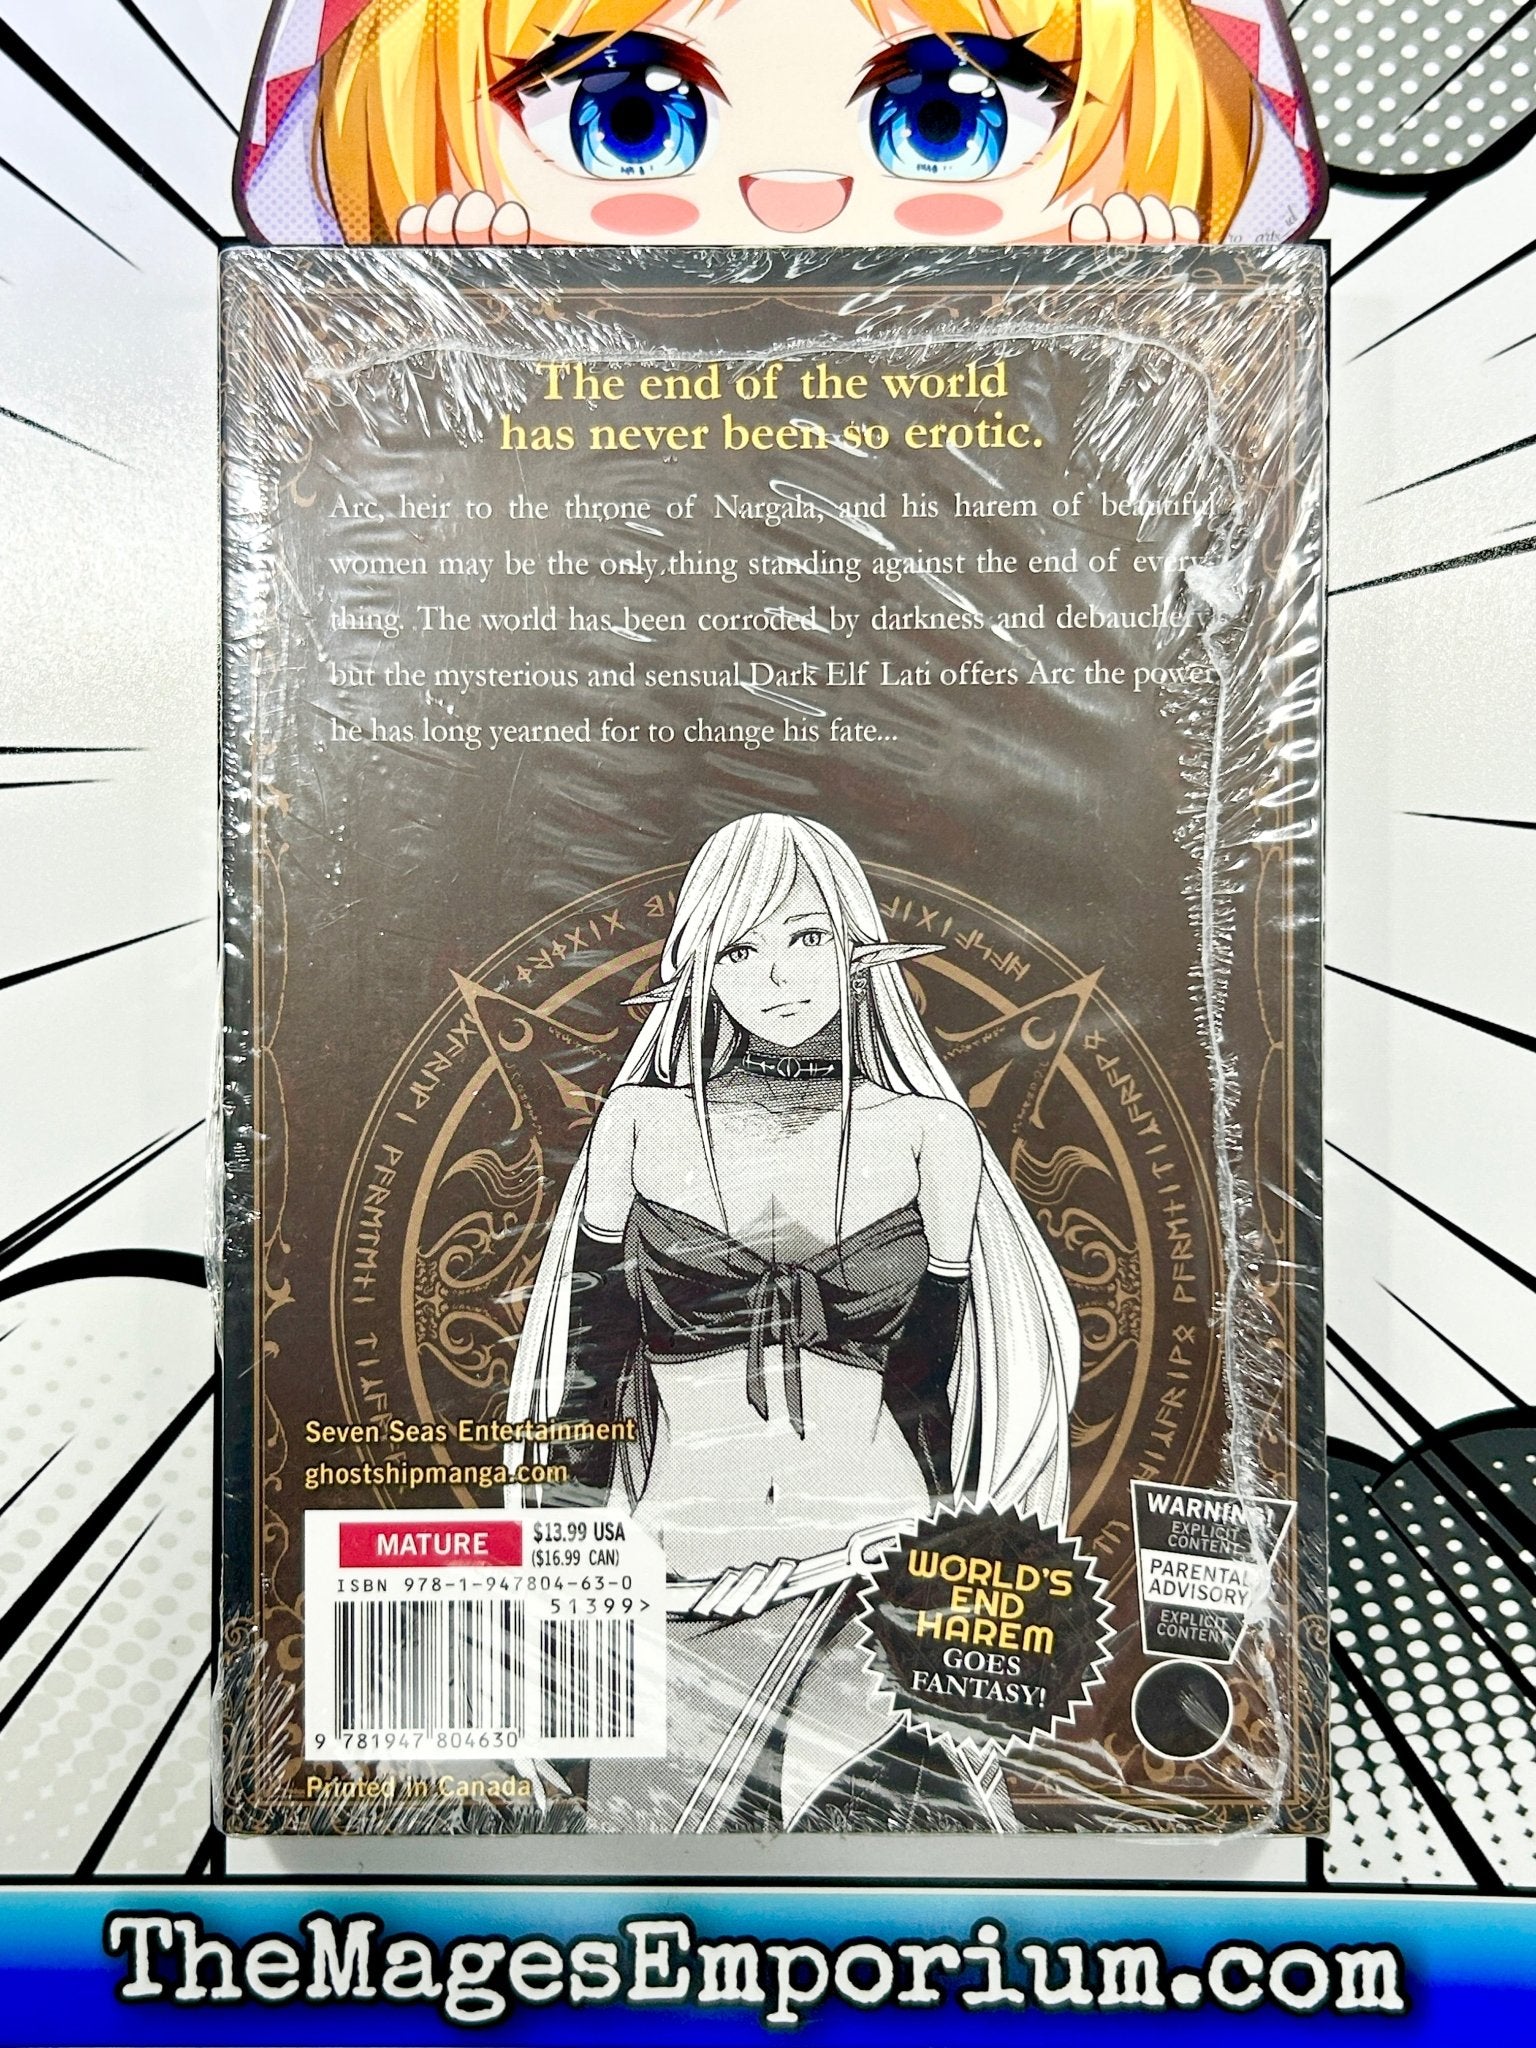 World's End Harem: Fantasia Vol. 8 by Link: 9781638588542 |  : Books